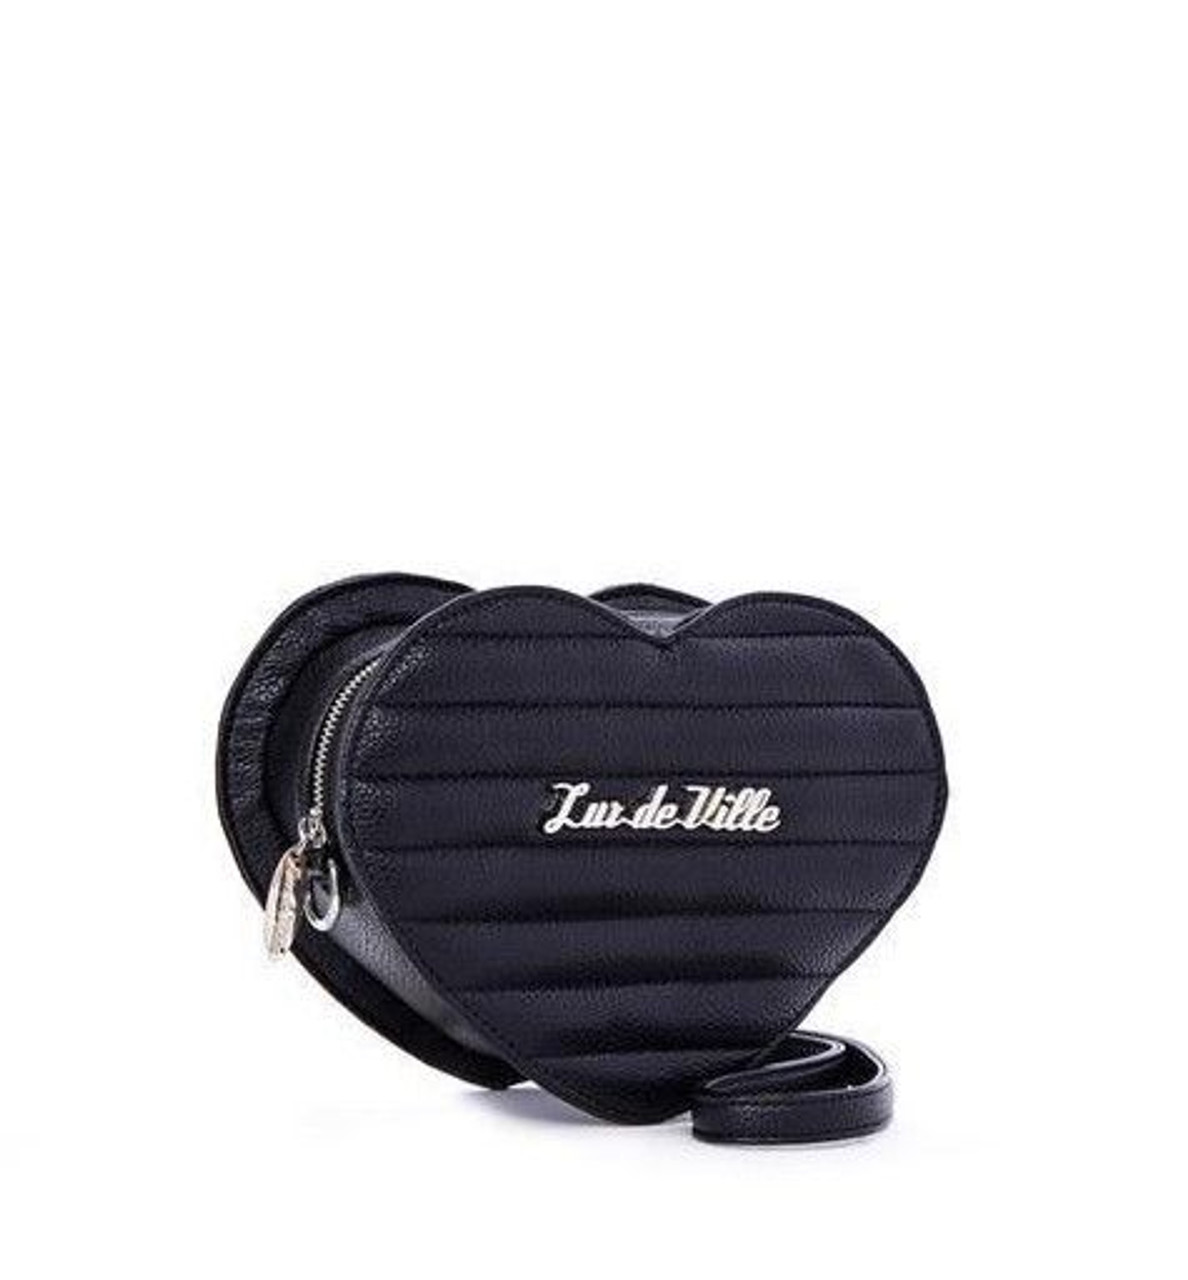 Lux De Ville Zip Bags & Handbags for Women for sale